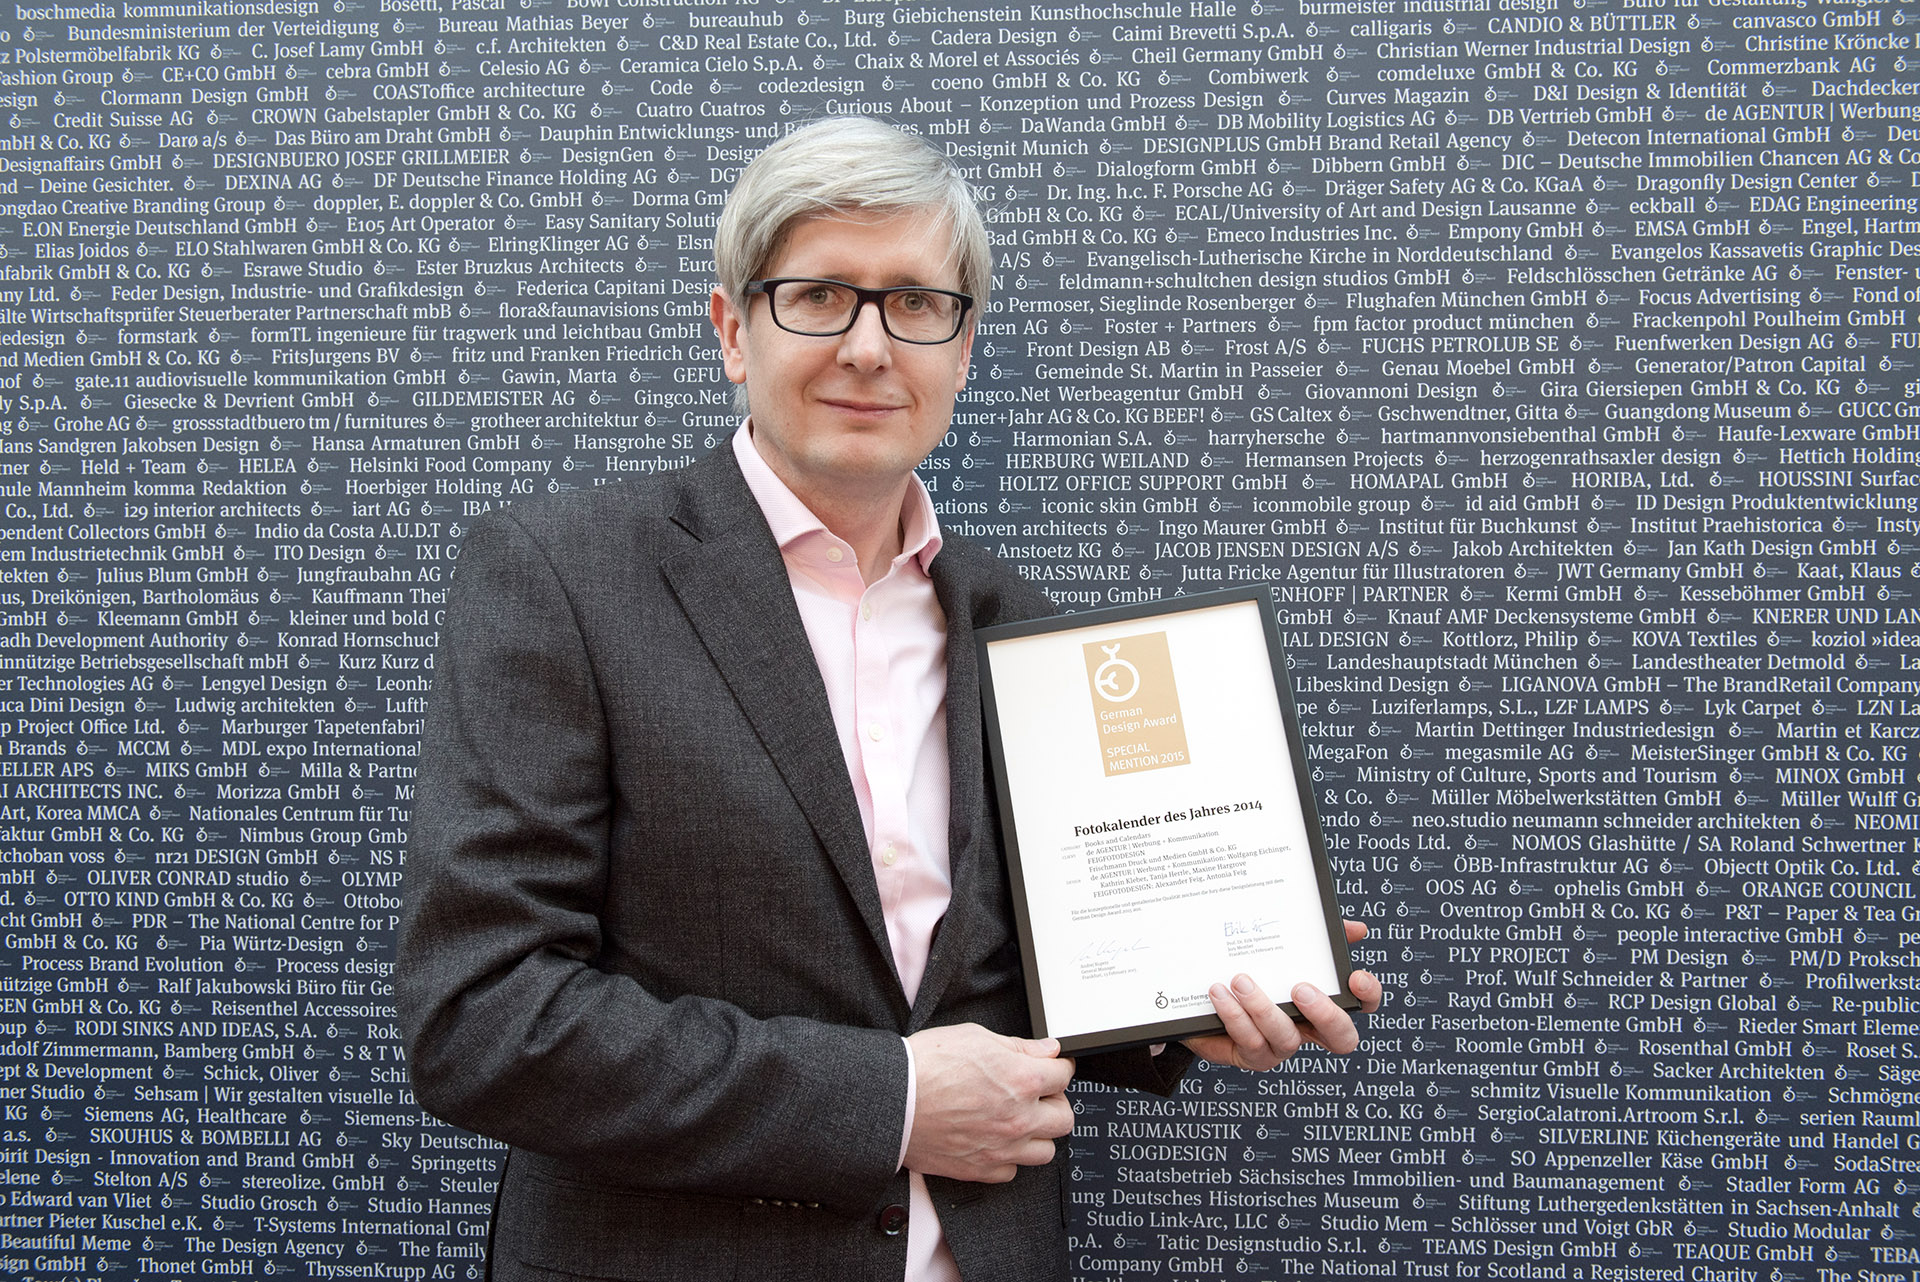 Fotograf Alexander Feig mit German Design Award 2015 in der Kategorie Special Mention